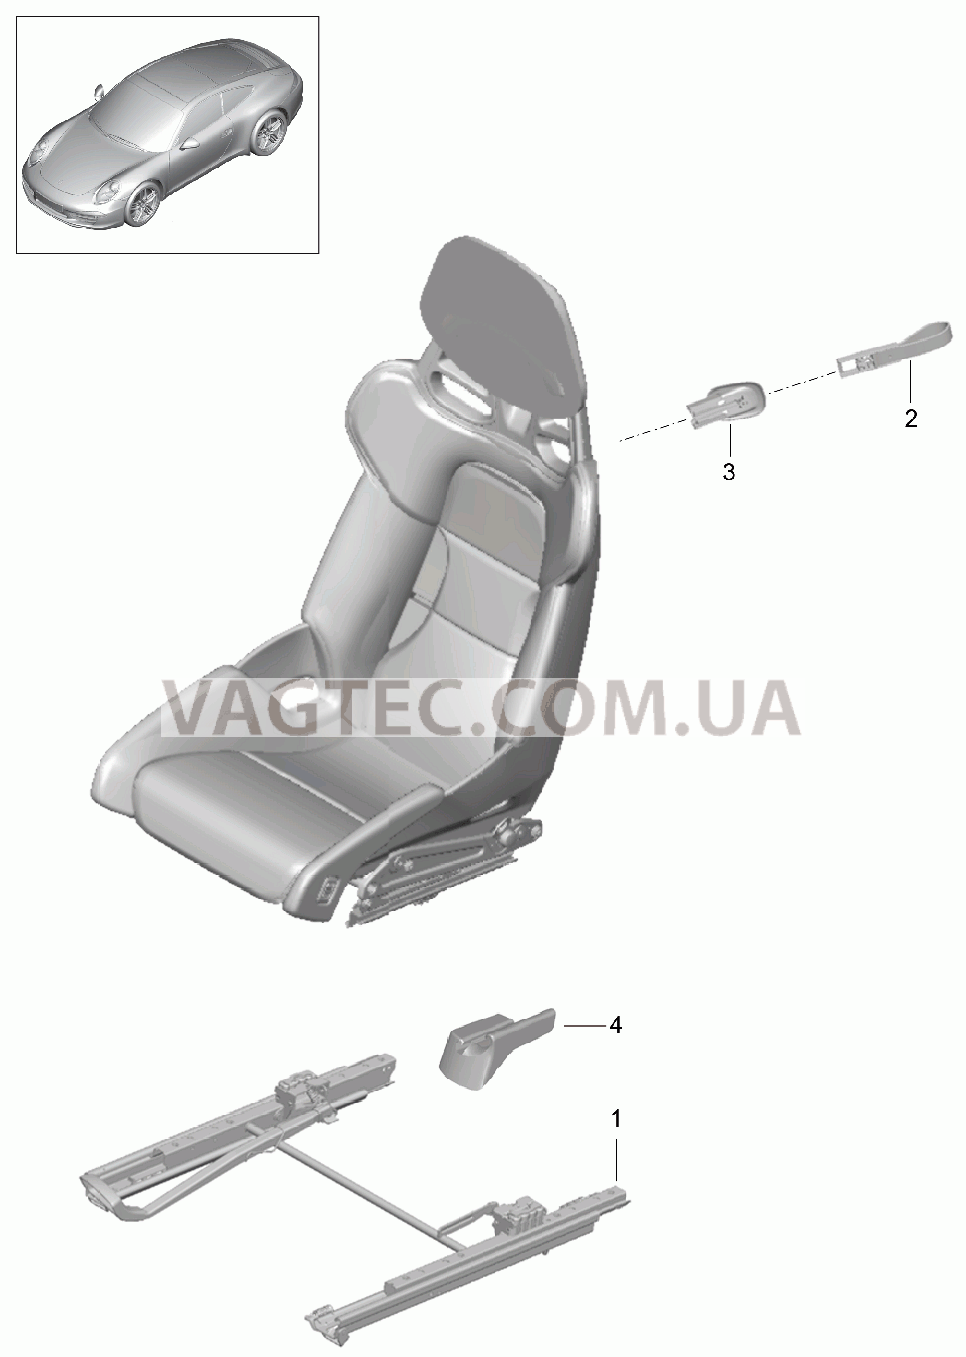 817-030 Ковшеобразное сиденье, складной, полный, Не поставляется для PORSCHE 911.Carrera 2012-2016